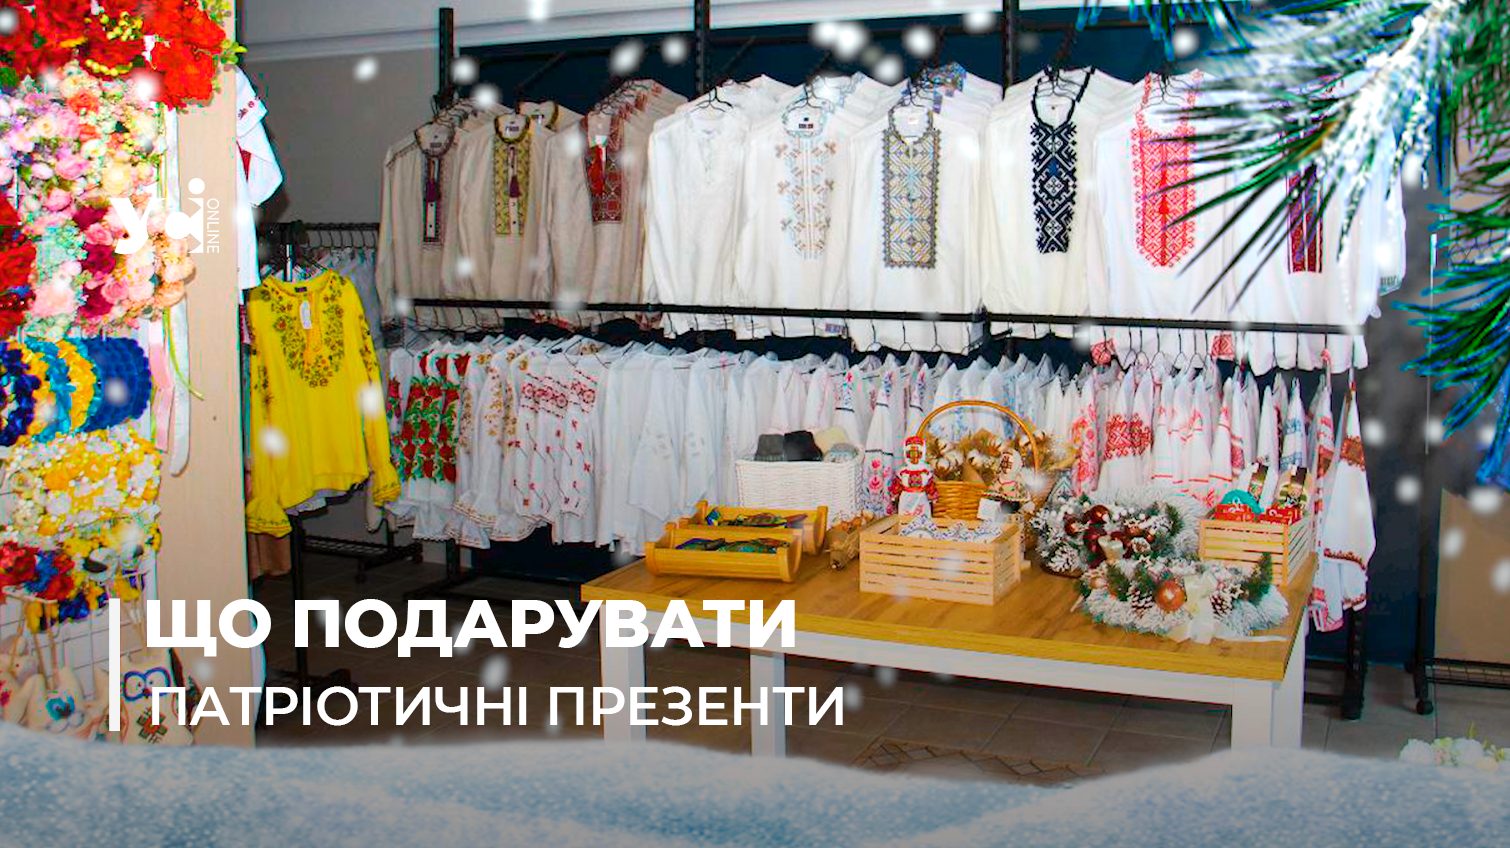 Стяги в банках та вишиванки: патріотичні подарунки, які можна купити в Одесі (фото, відео) «фото»